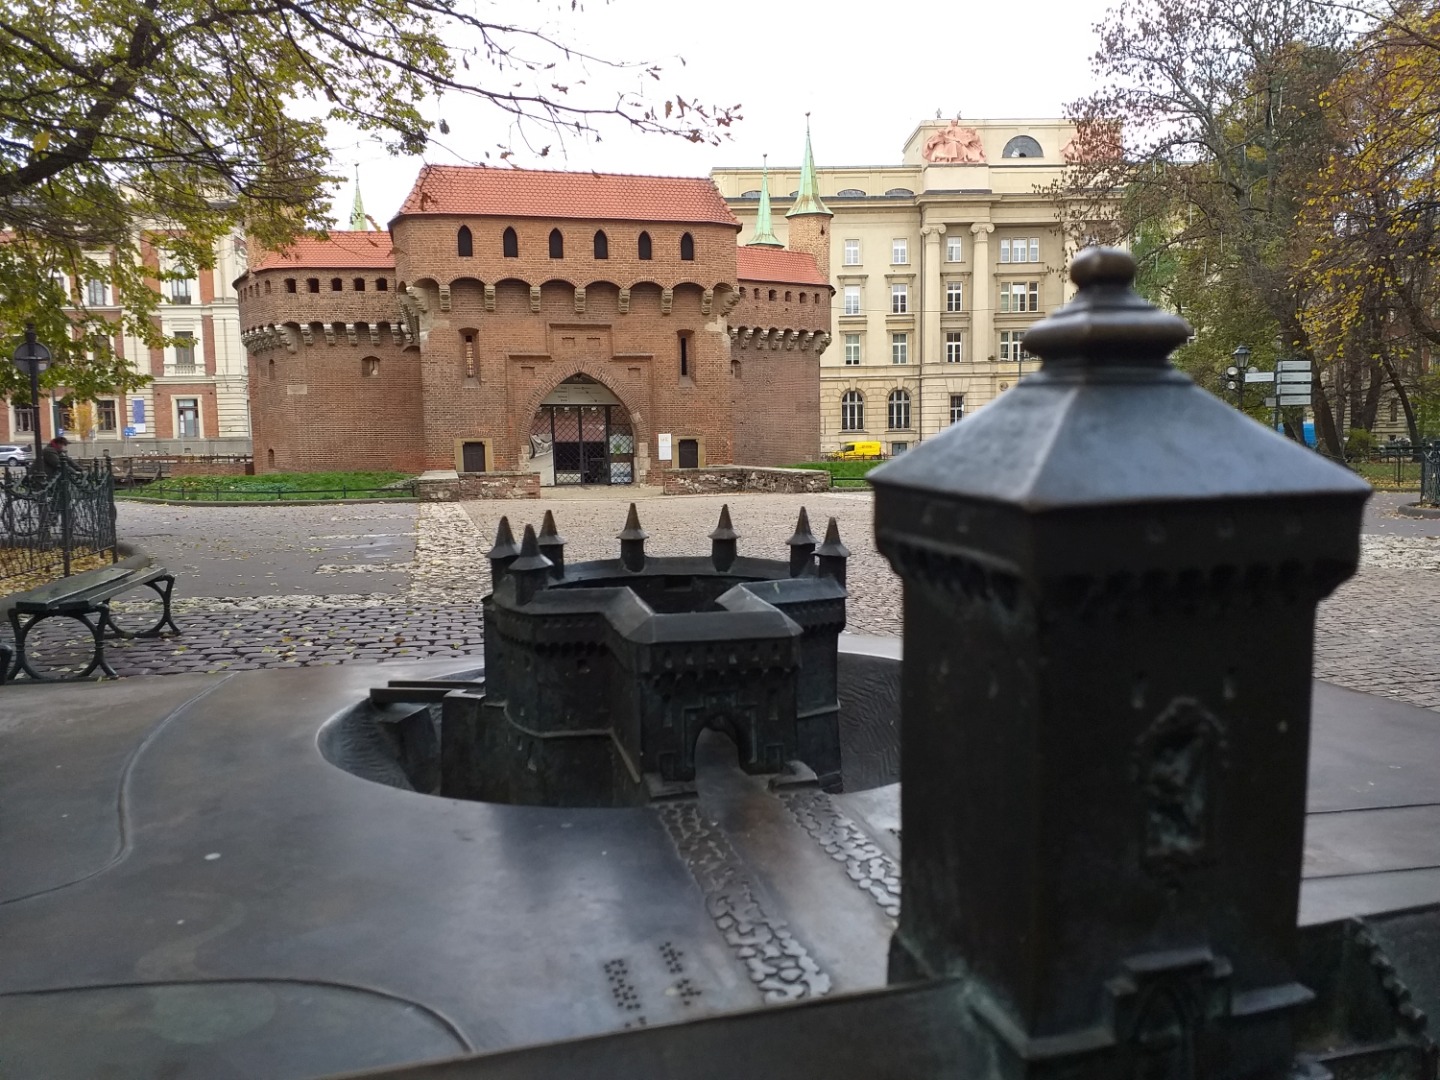 Krakowska siła ducha - quest dla odważnych